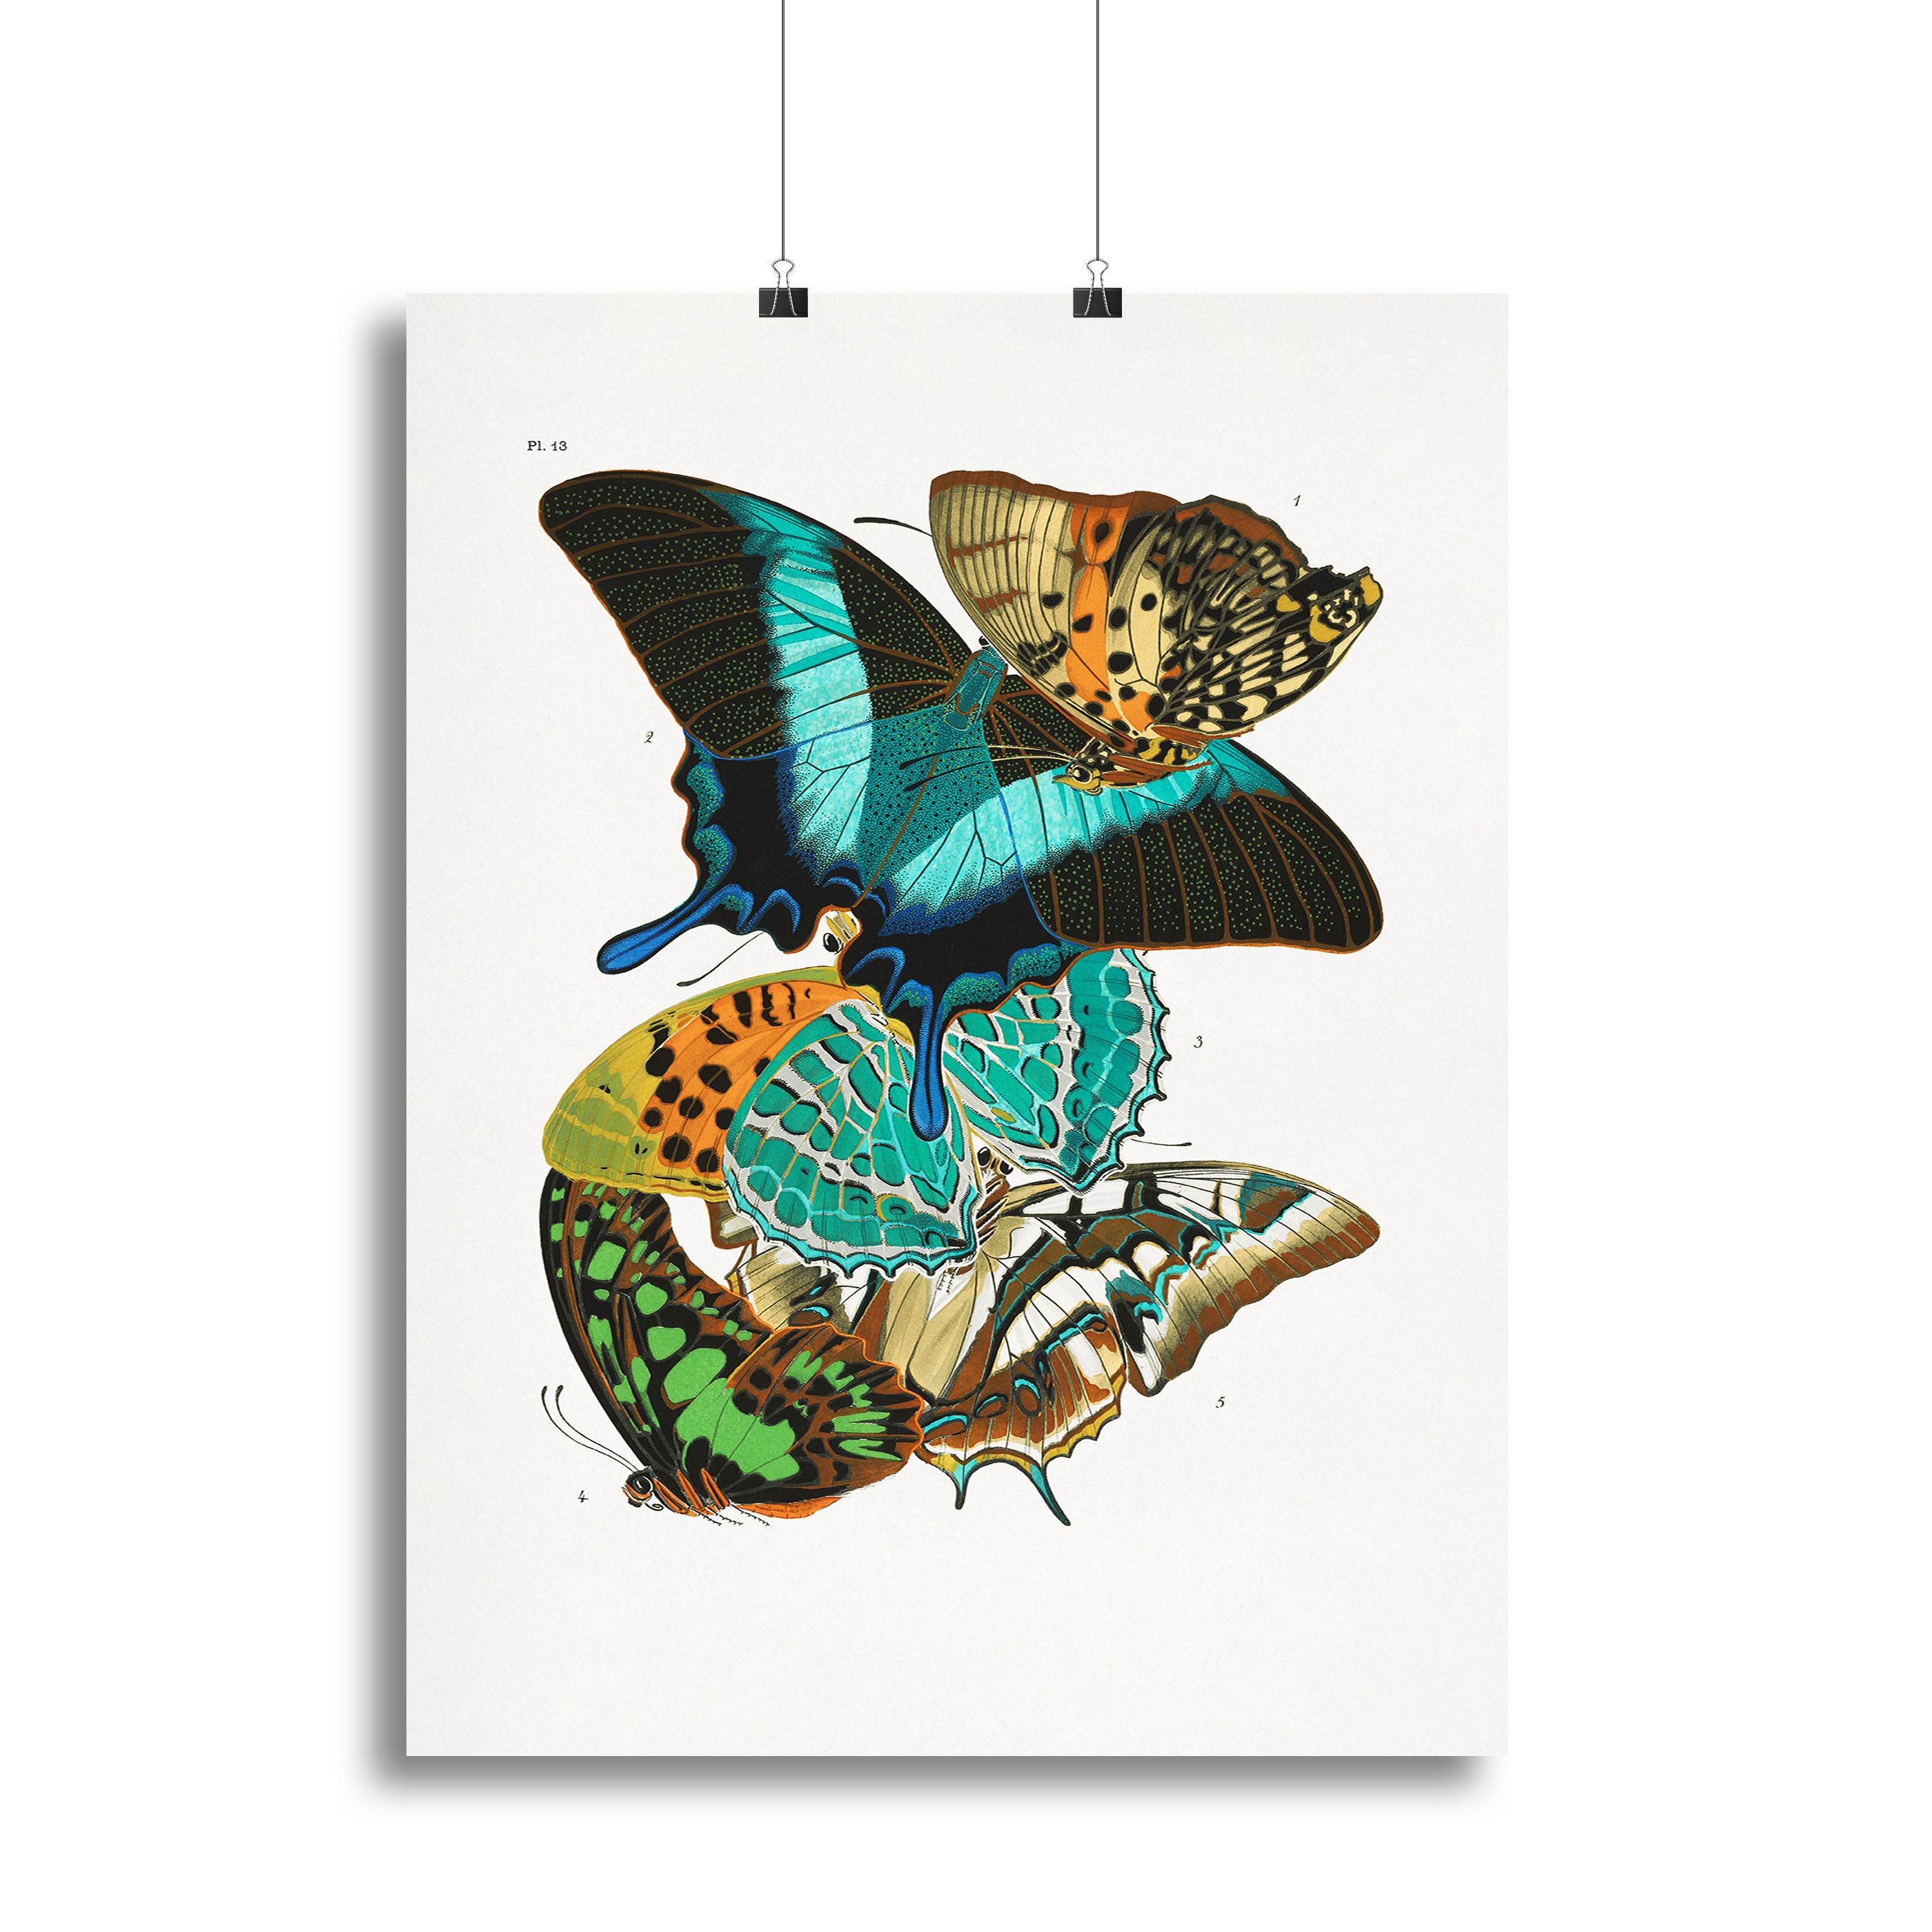 Butterflies Part 13 Canvas Print or Poster - Canvas Art Rocks - 2